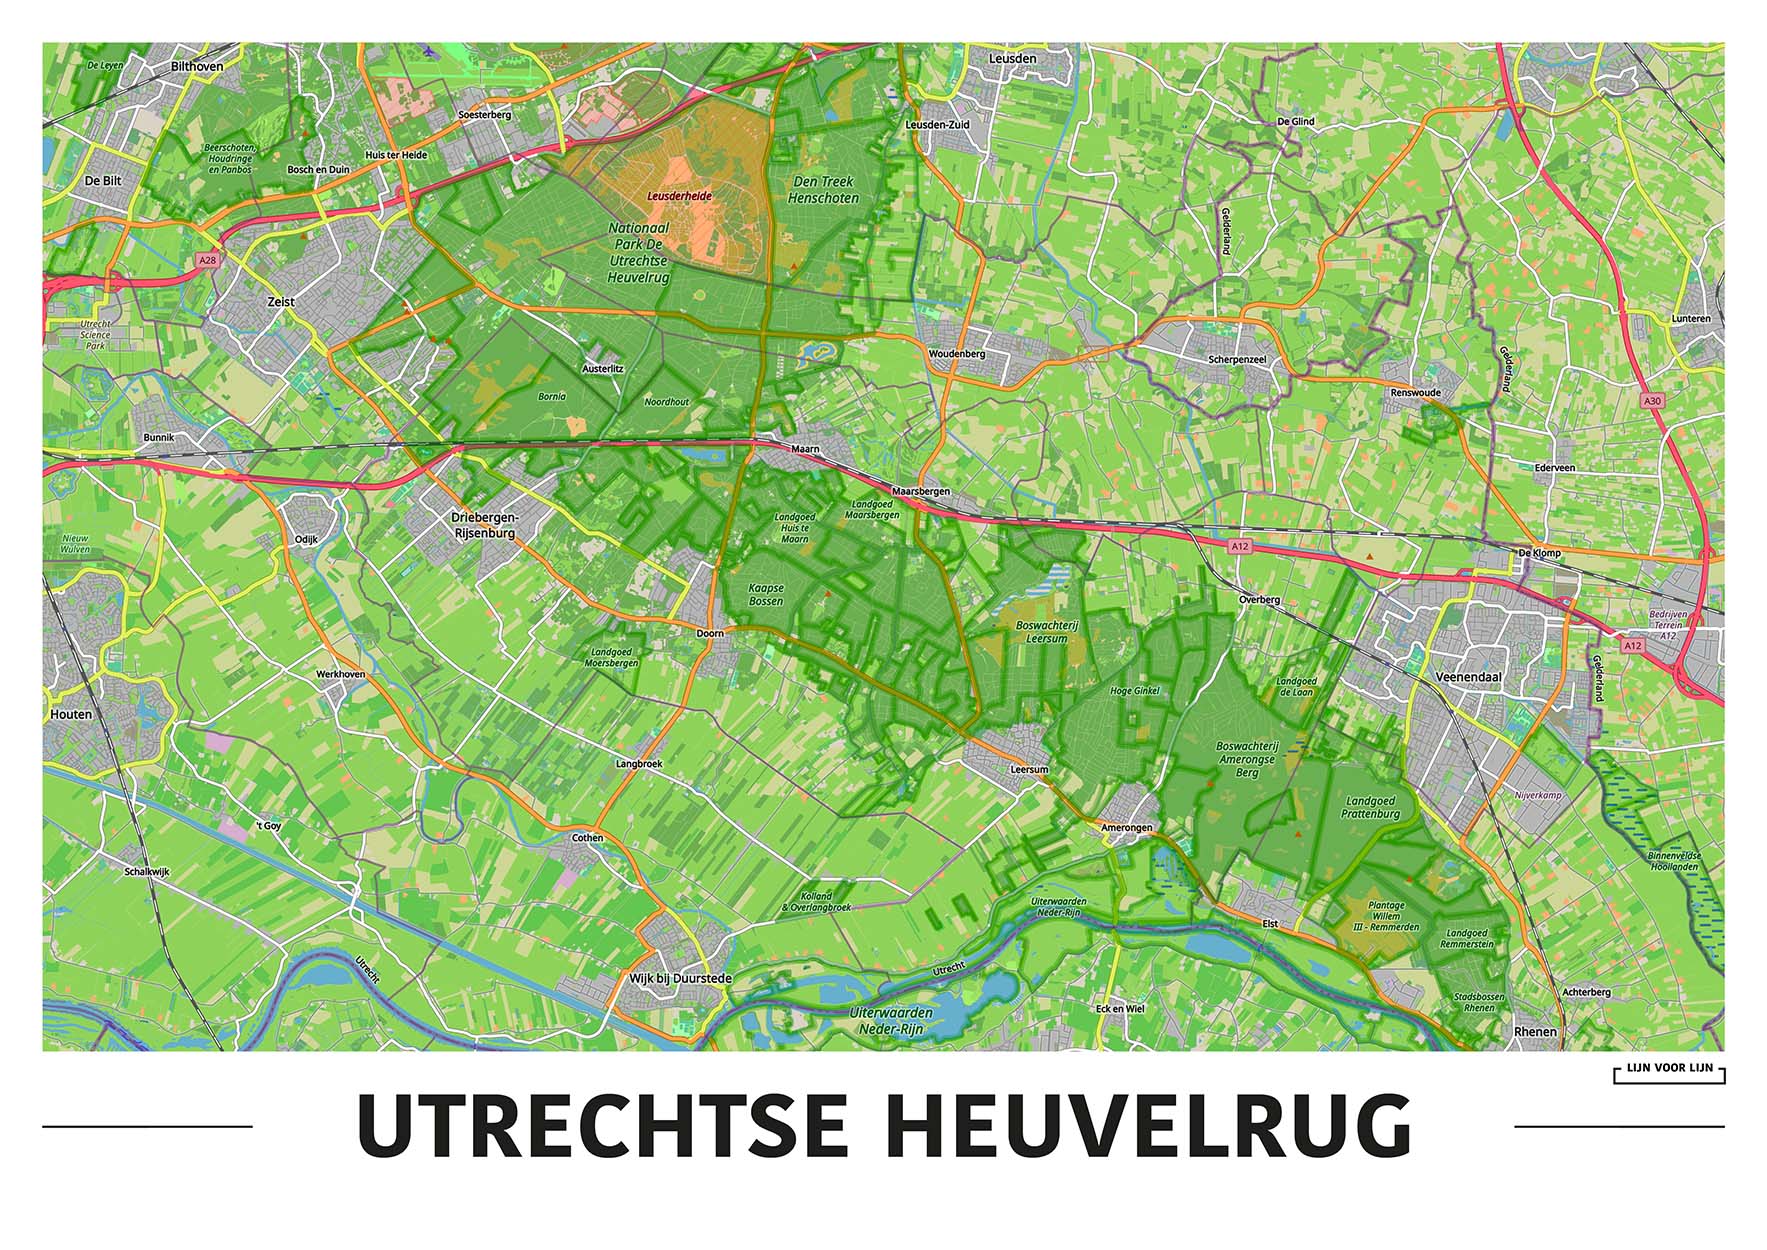 Utrechtse Heuvelrug